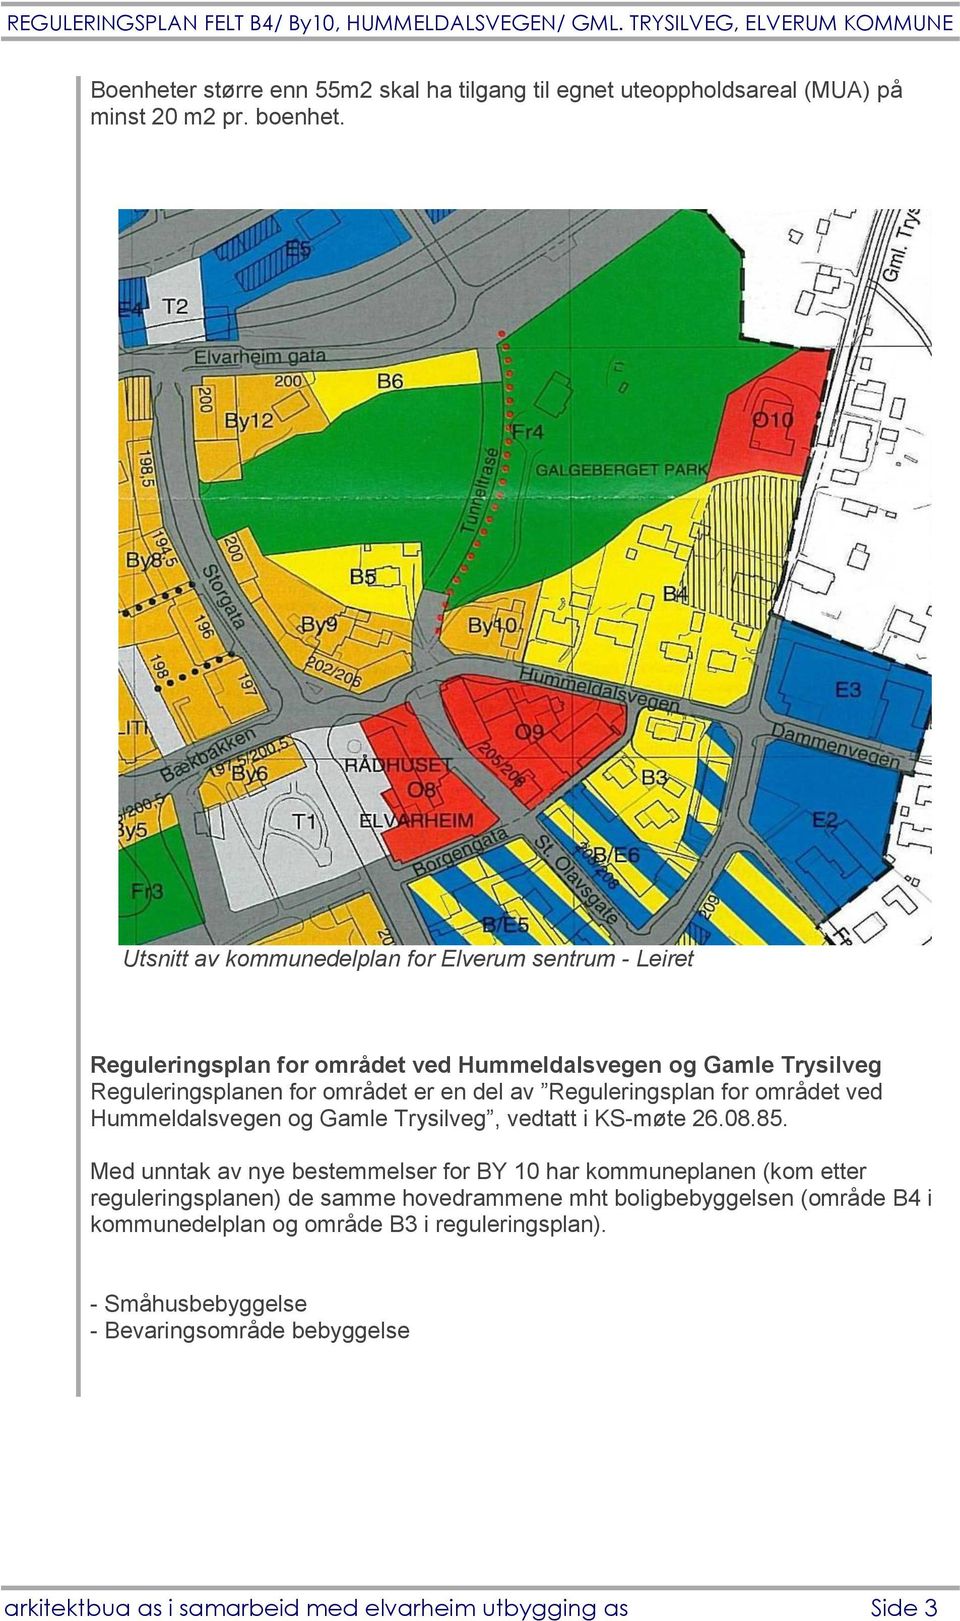 Reguleringsplan for området ved Hummeldalsvegen og Gamle Trysilveg, vedtatt i KS-møte 26.08.85.